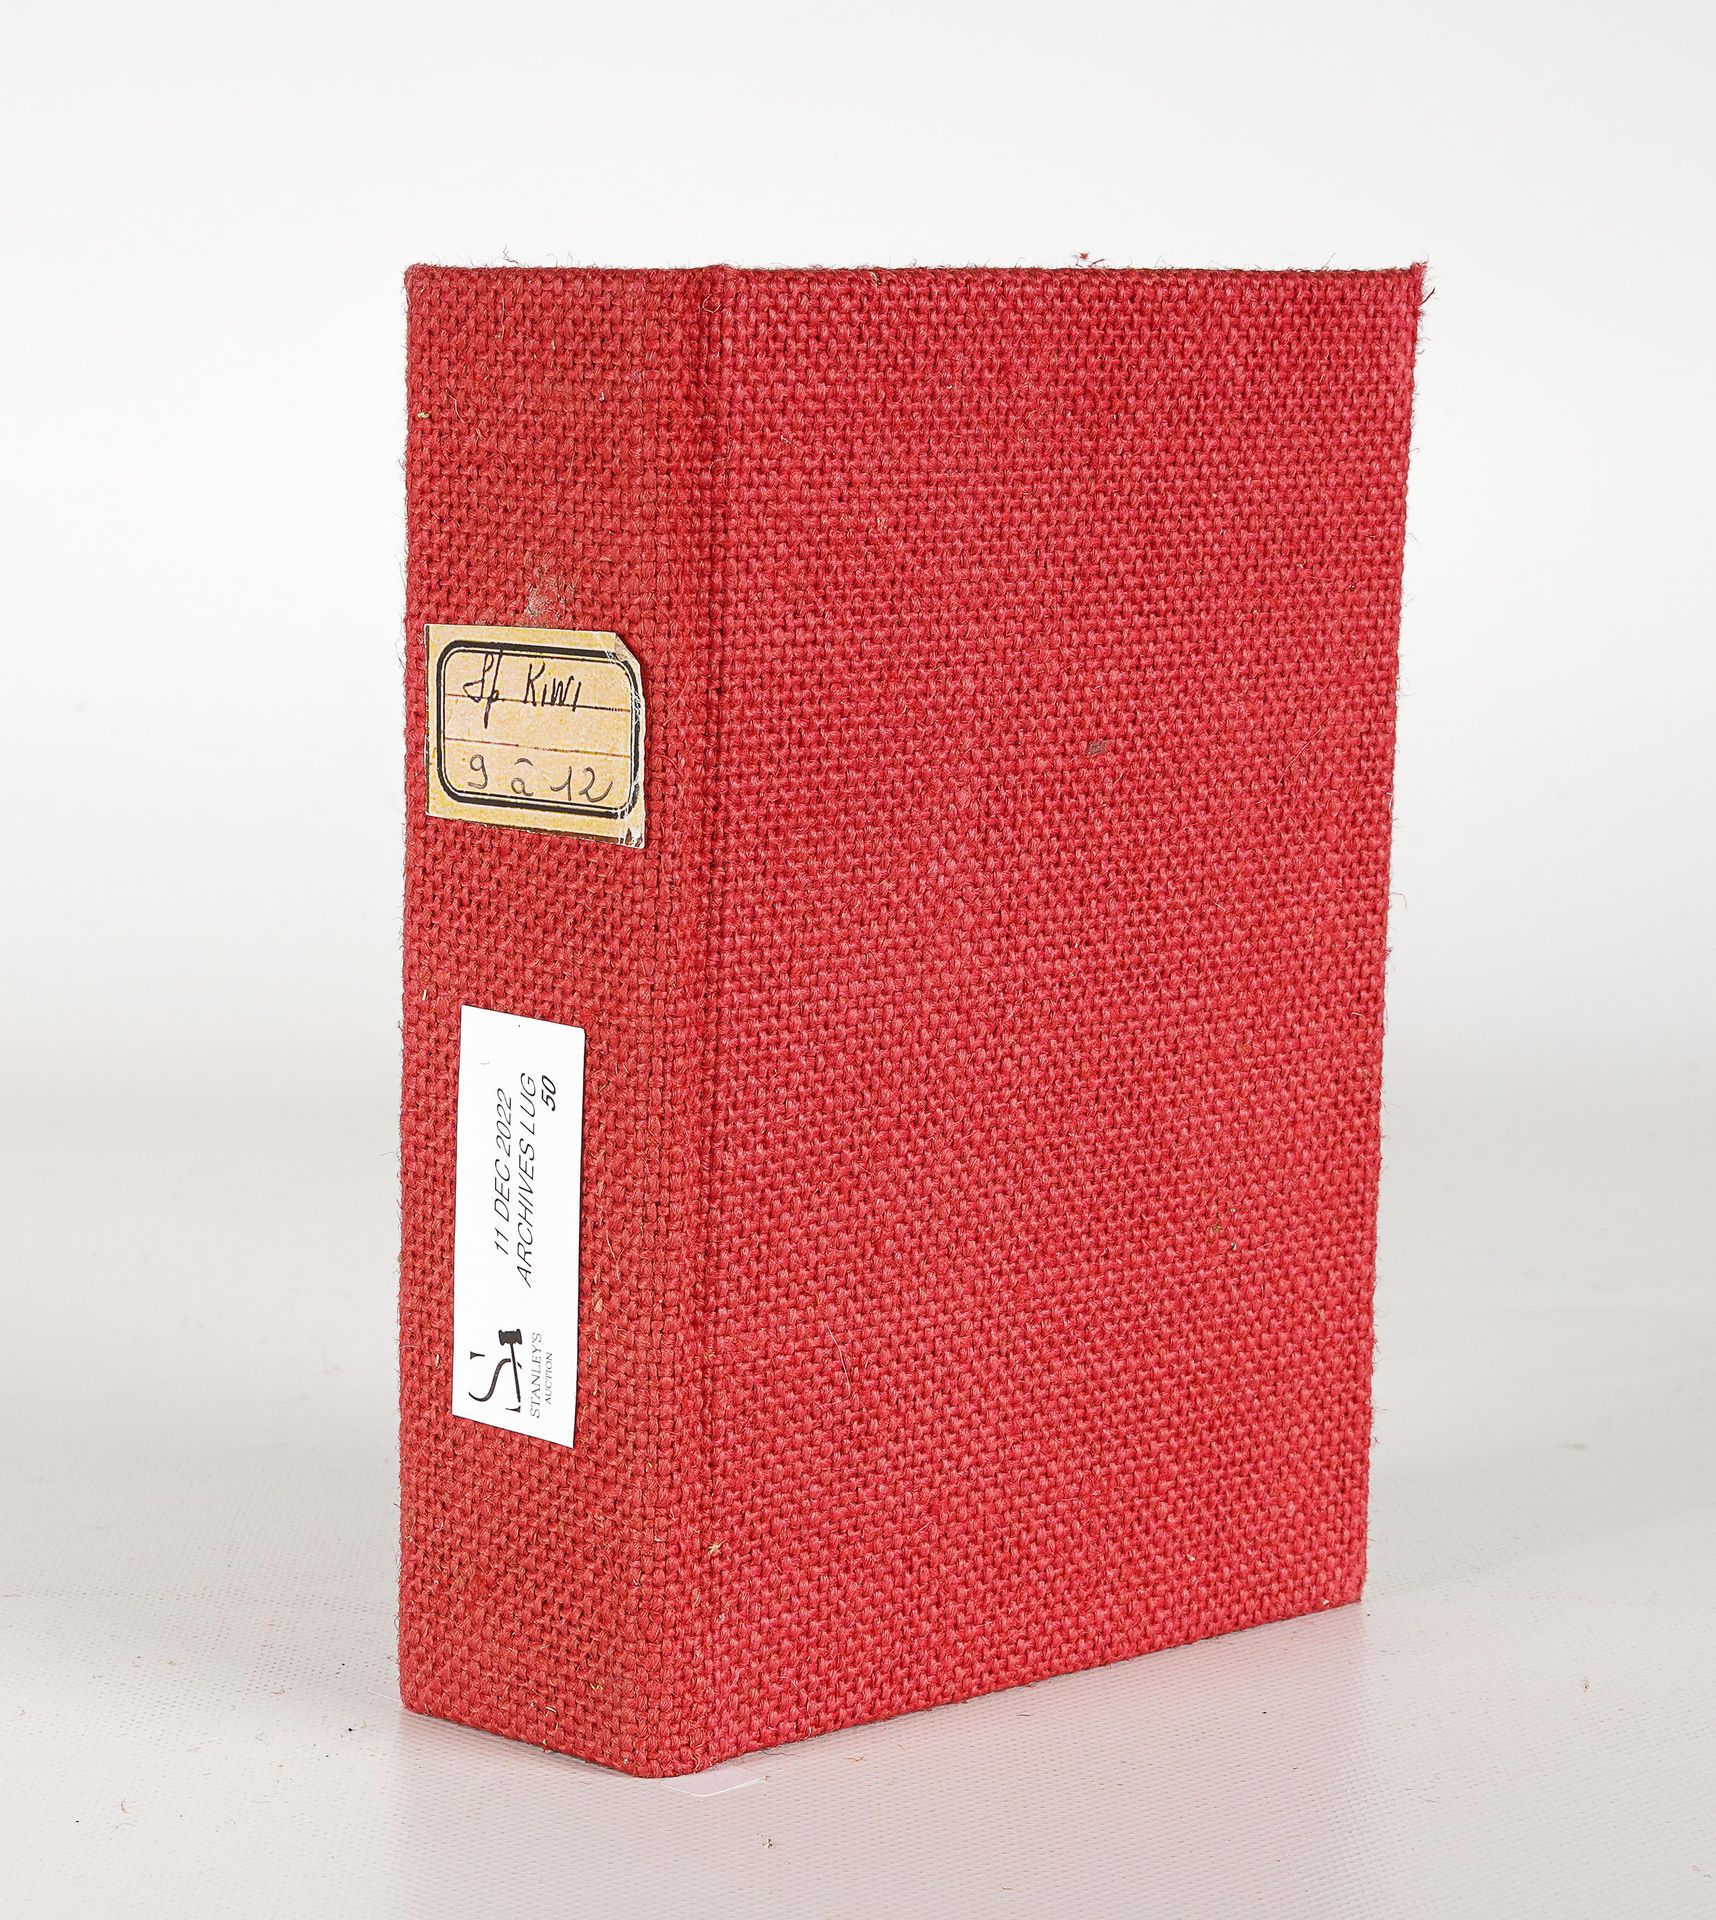 LUG SEMIC, ARCHIVES COMICS 带有4个KIWI特价品的活页夹，9至12号，红布，尺寸为H 18 x 13,5 cm